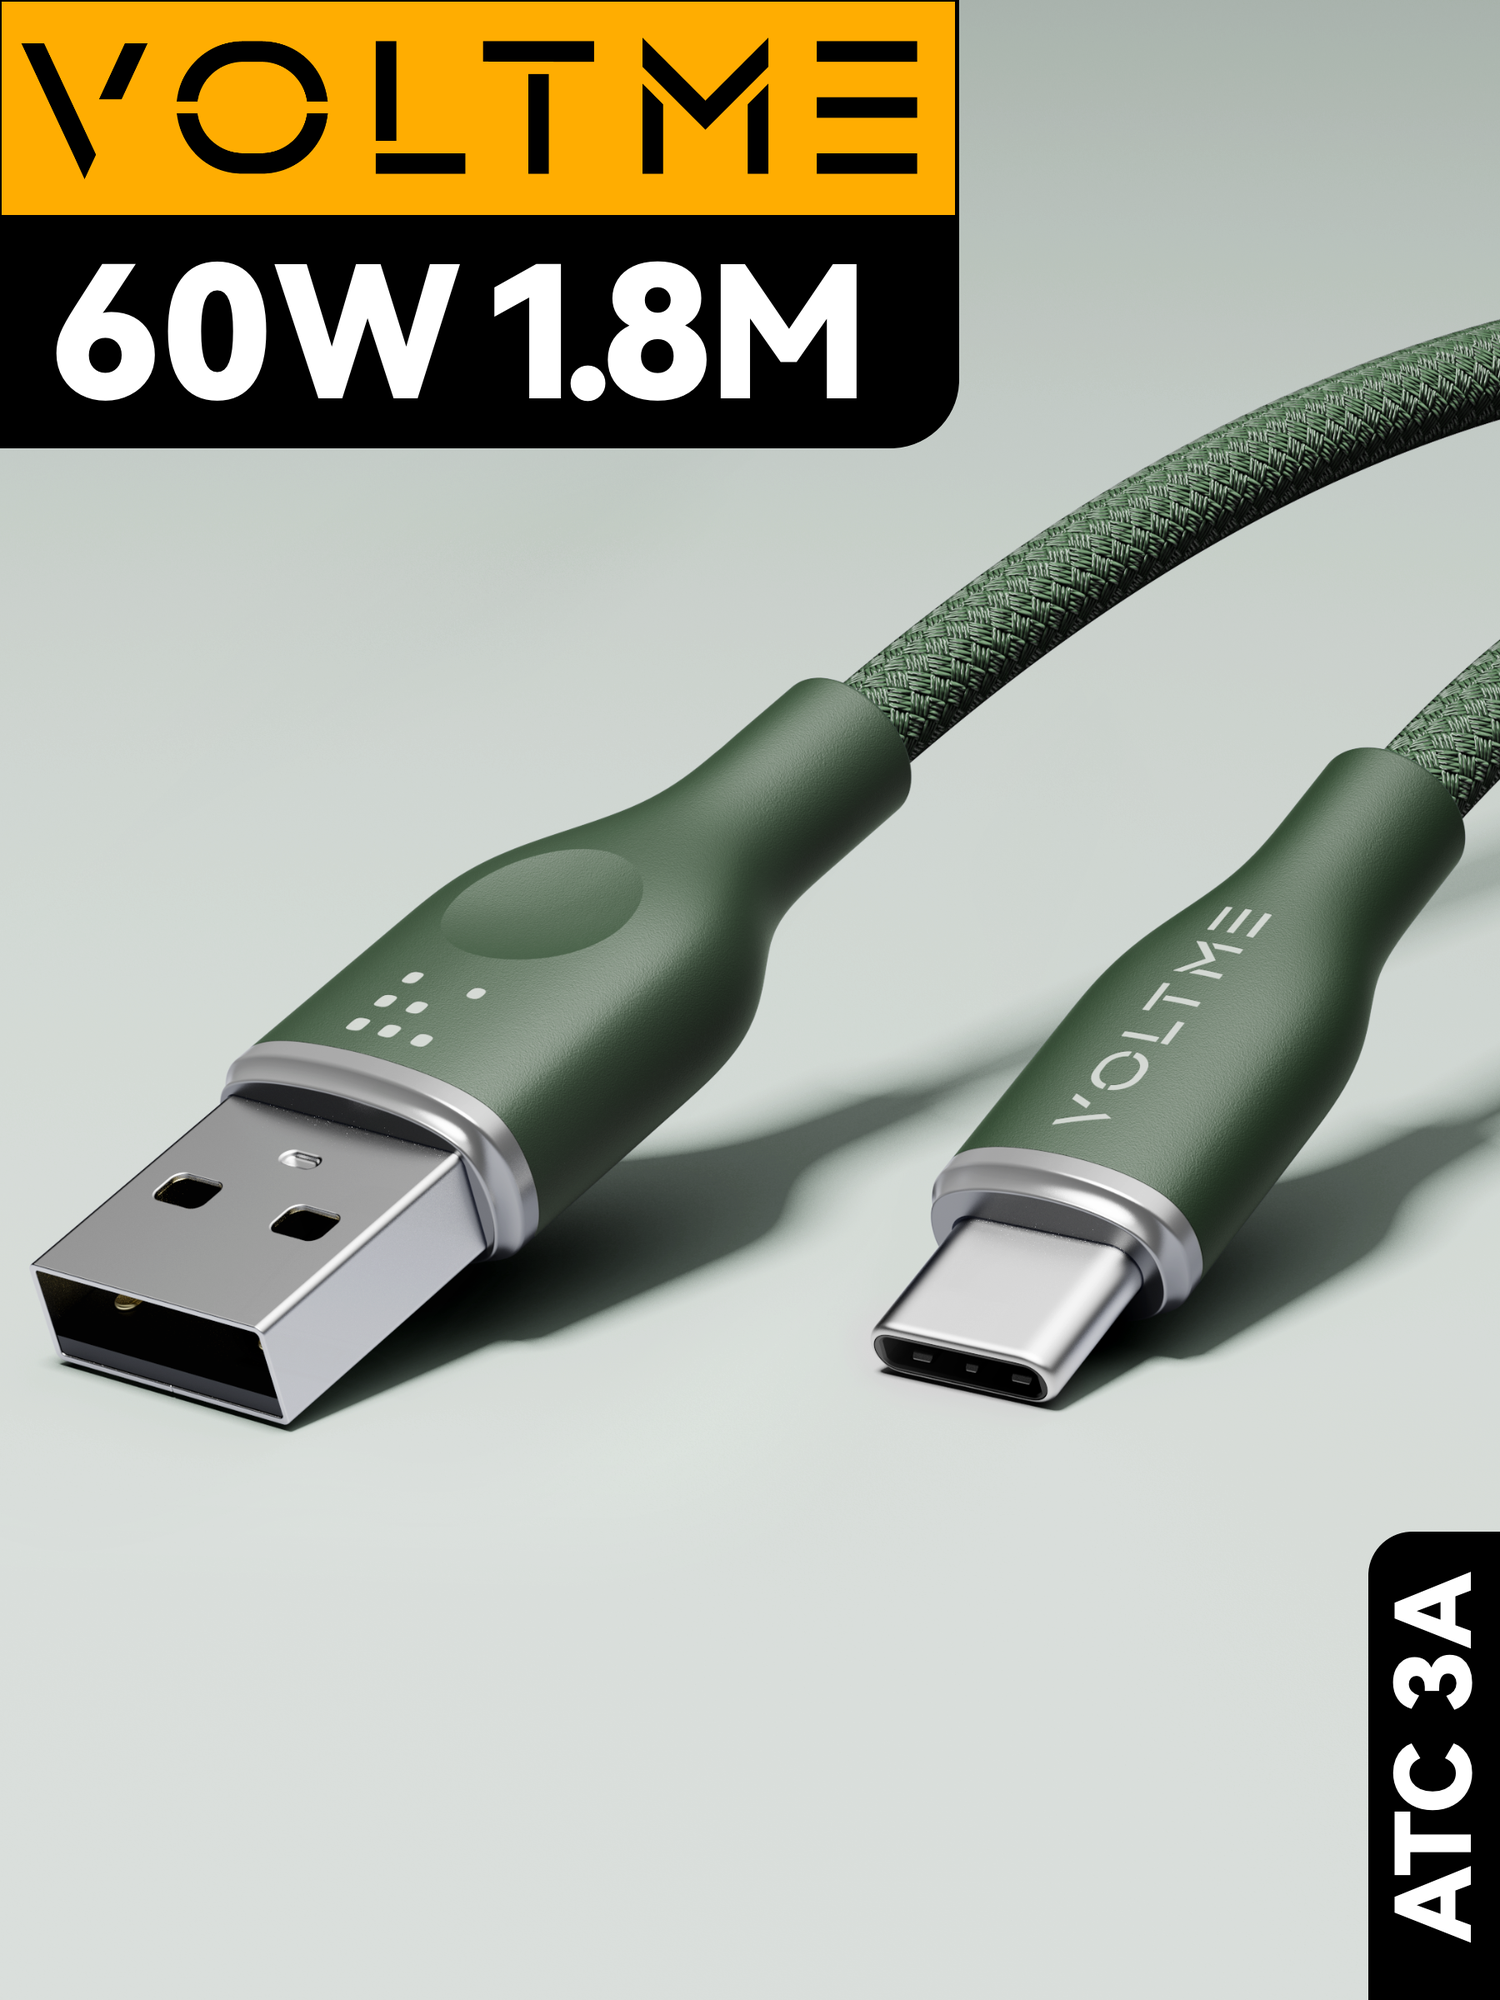 Кабель 1.8м 3A 60W Voltme PowerLink Rugg ATC USB - Type-C, провод для быстрой зарядки телефона Samsung, Iphone, шнур зарядного устройства, зеленый